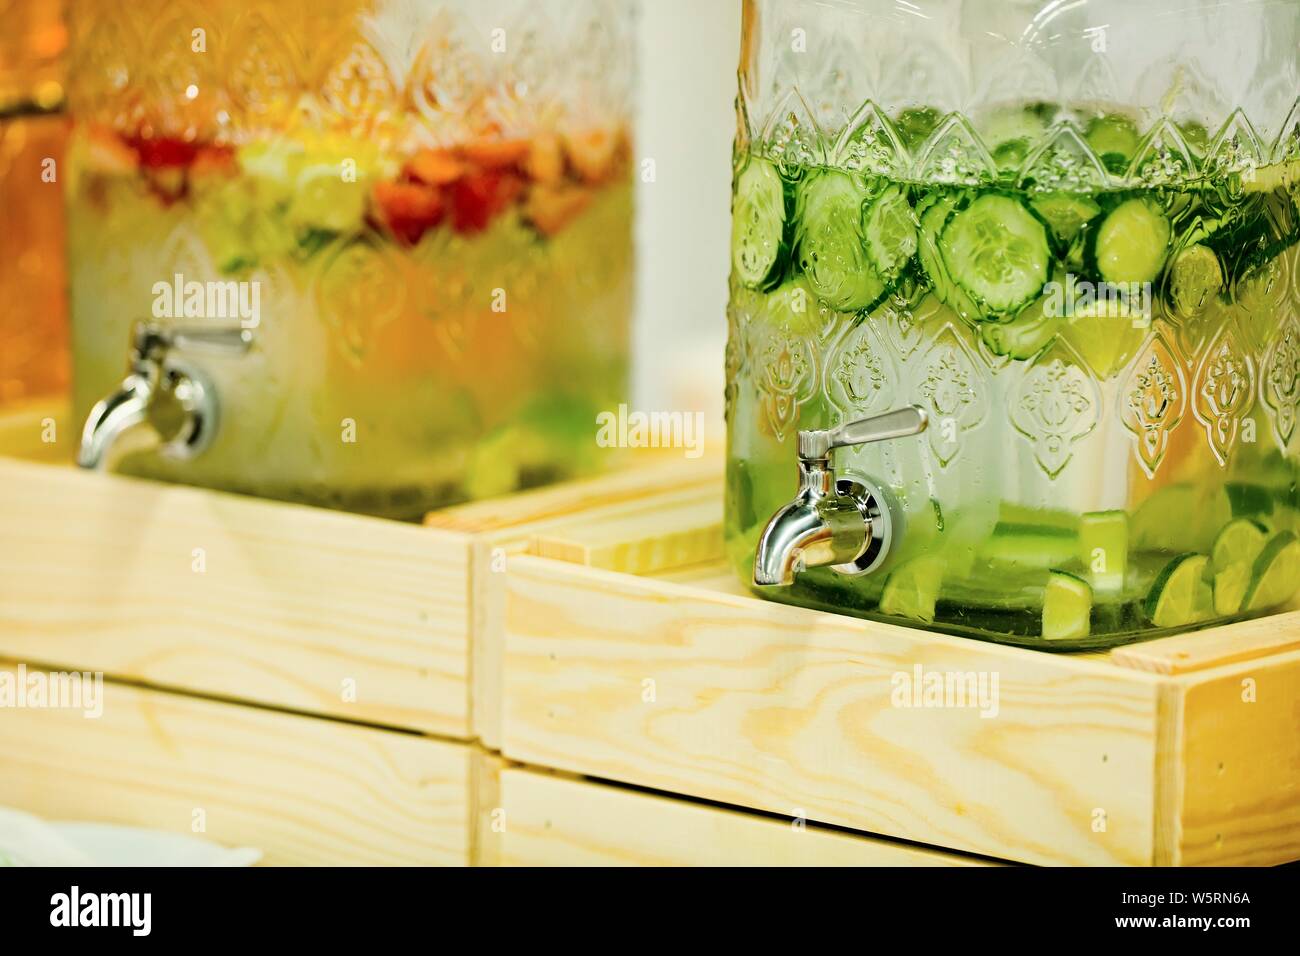 Détail sur les fruits et légumes, des boissons dans les distributeurs de boissons grand verre à eau d'une pièce, avec des concombres, des fraises et des limes en verre avec réservoir Banque D'Images